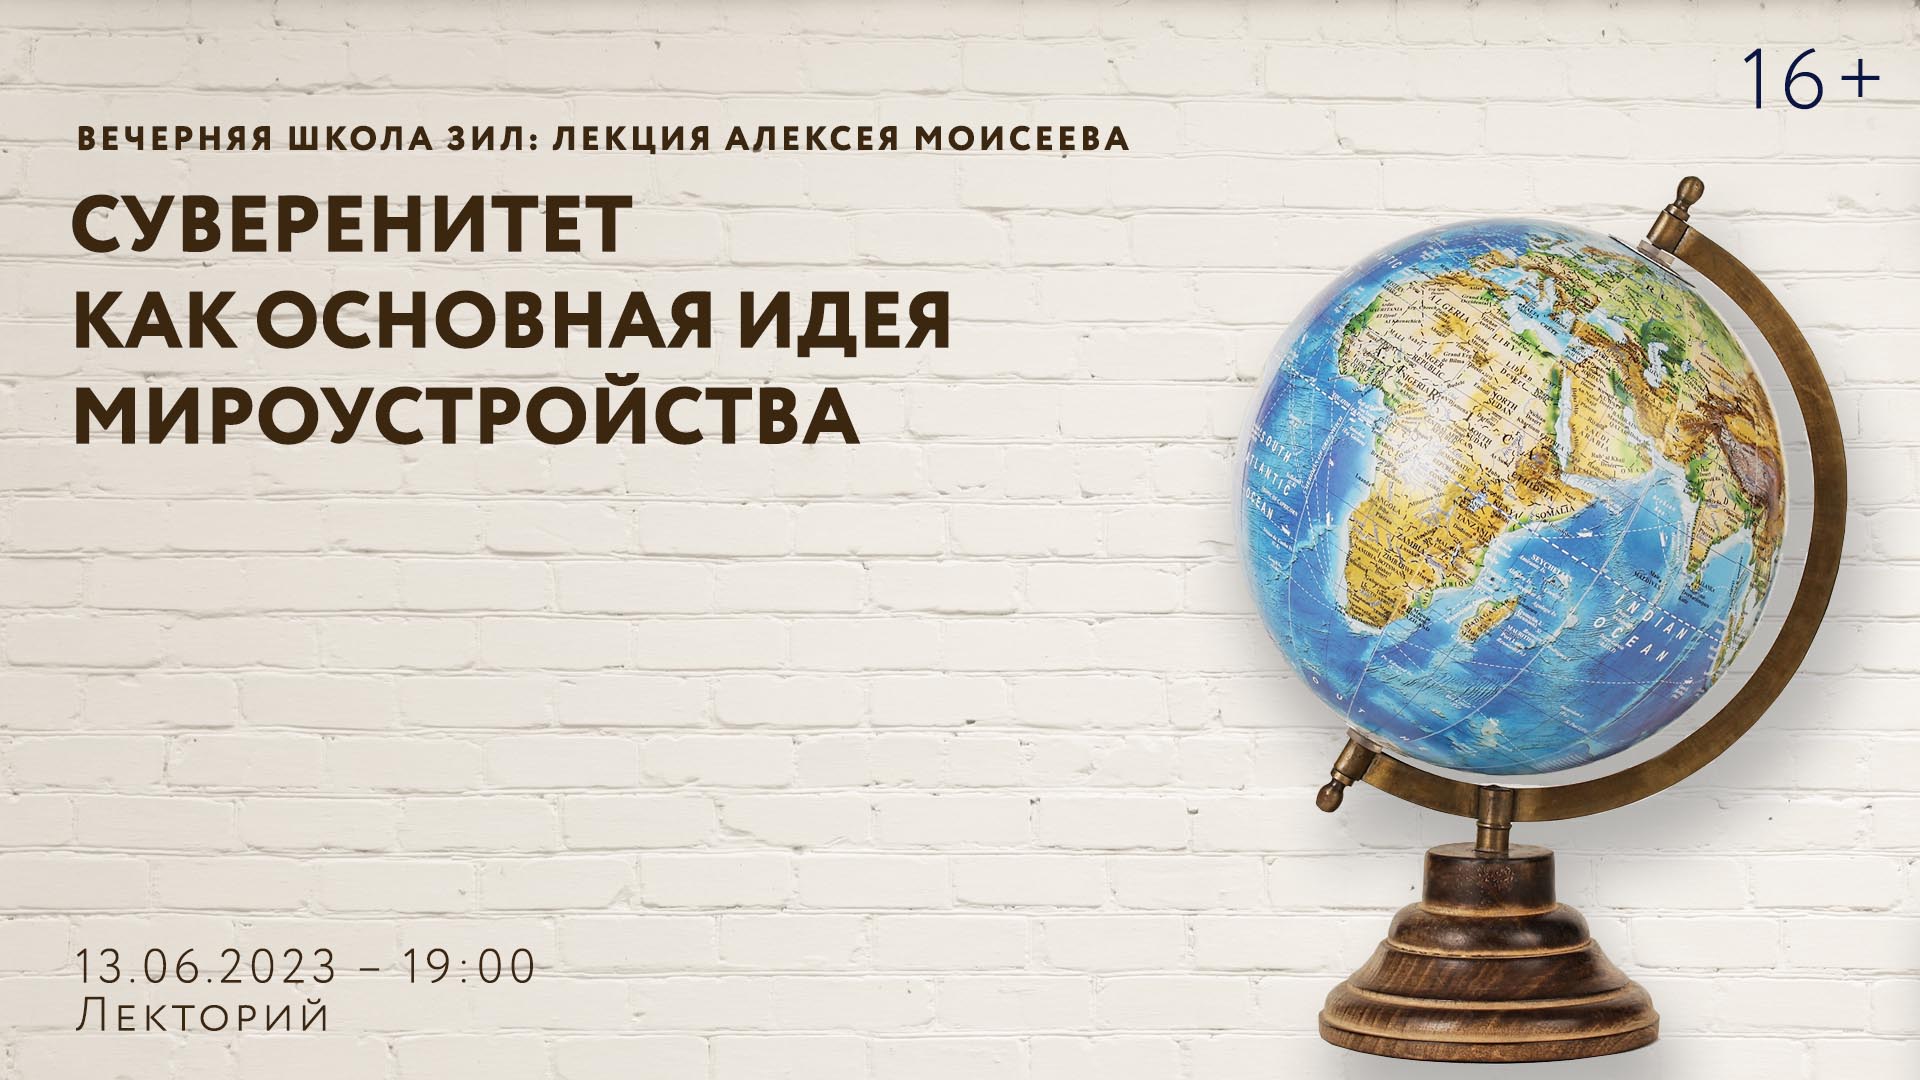 Вечерняя школа ЗИЛ: лекция Алексея Моисеева «Суверенитет как основная идея мироустройства»